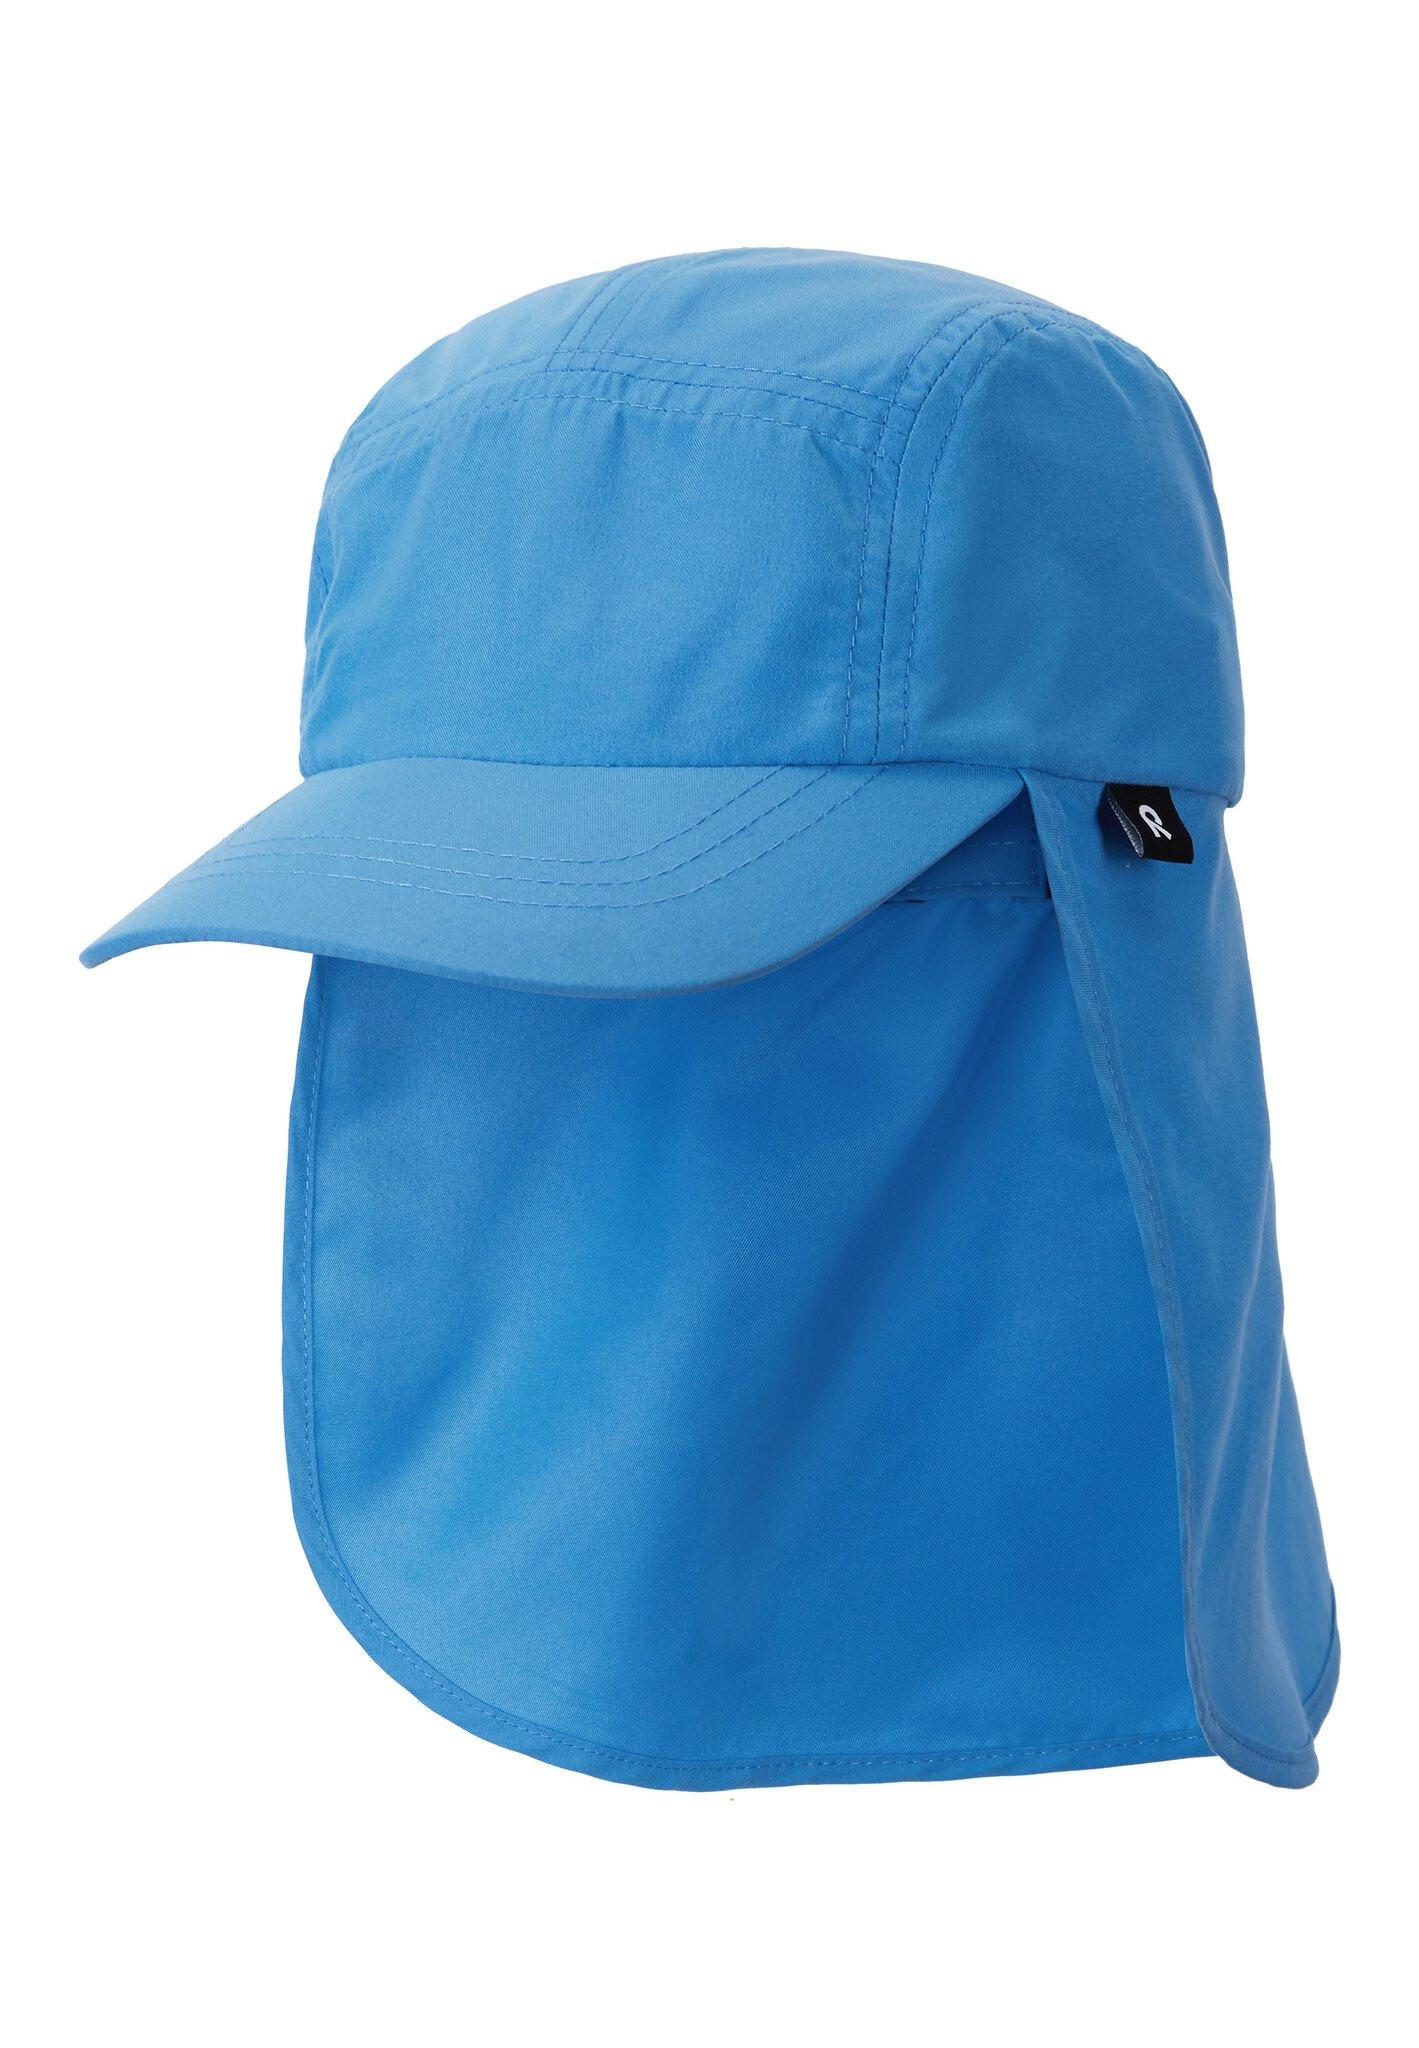 Reima  Kinder Sonnenschutz Hut Biitsi Cool blue 